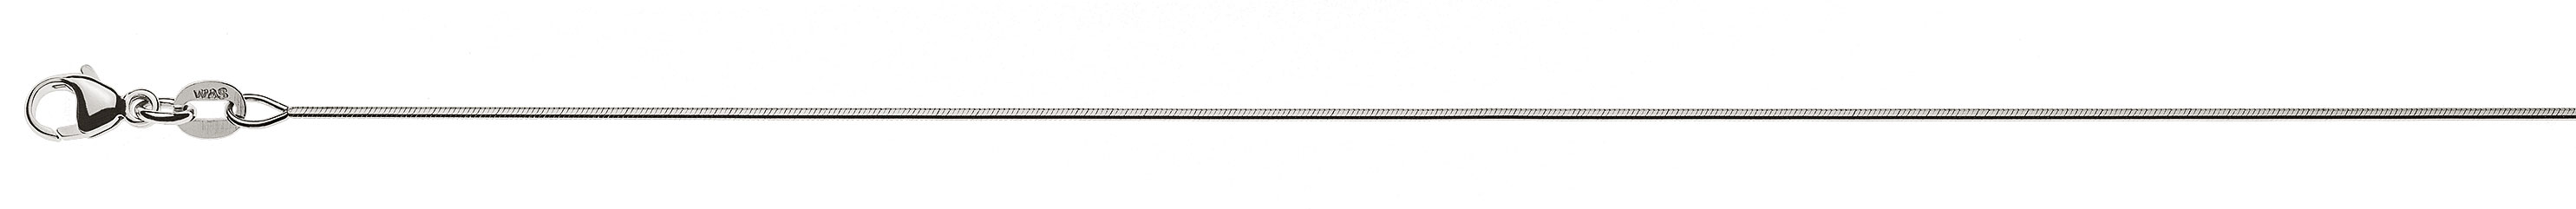 AURONOS Prestige Halskette Weissgold 18K Schlangenkette diamantiert 45cm 0.8mm